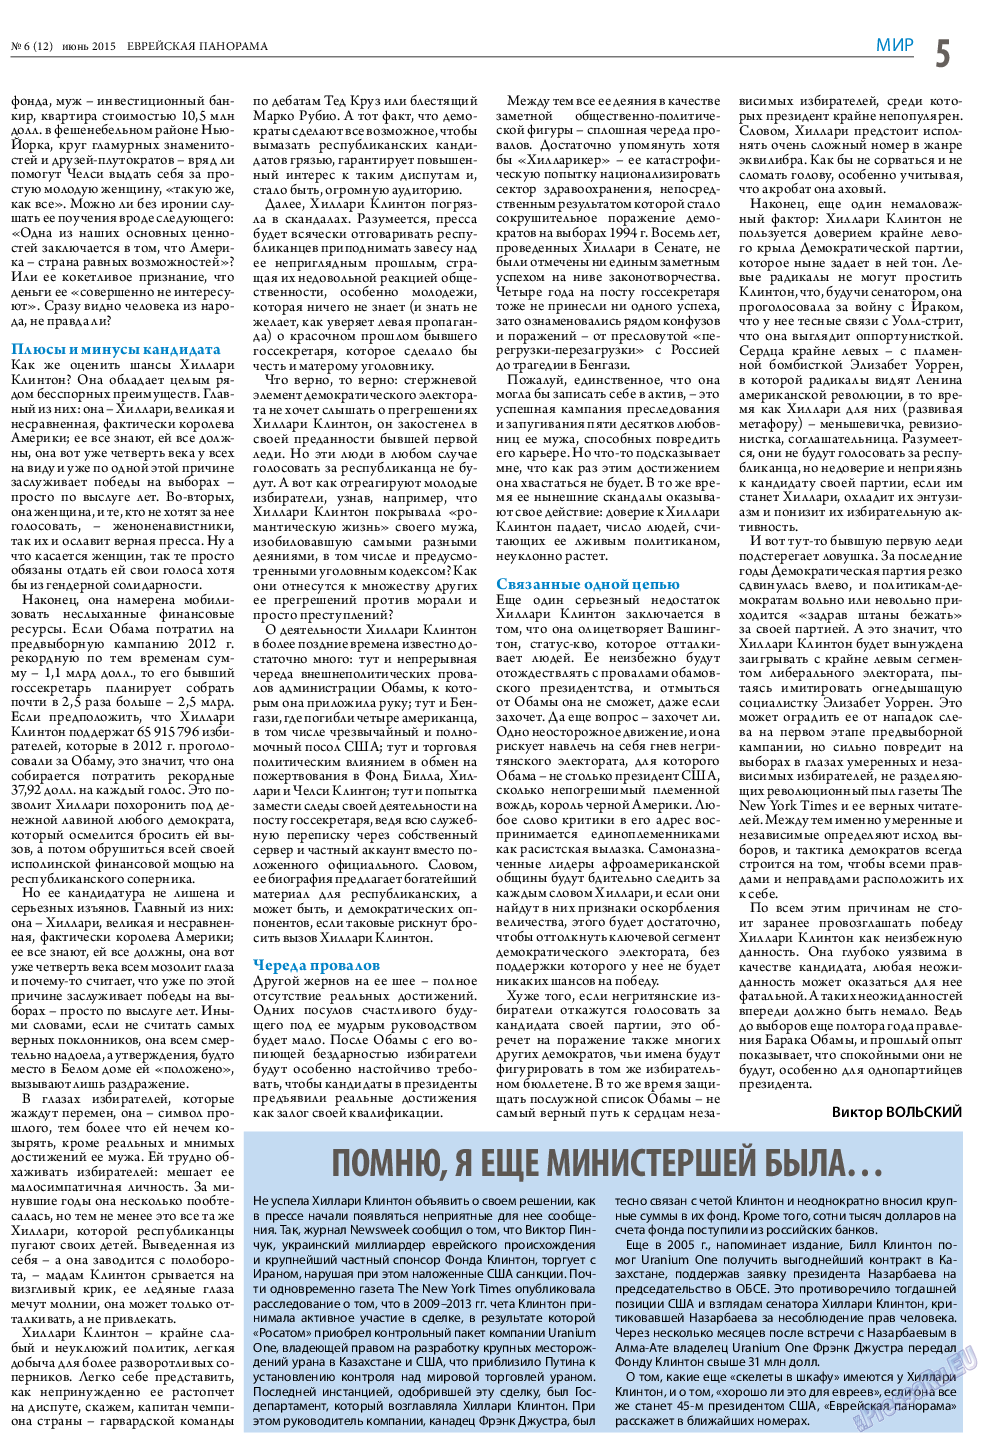 Еврейская панорама (газета). 2015 год, номер 6, стр. 5